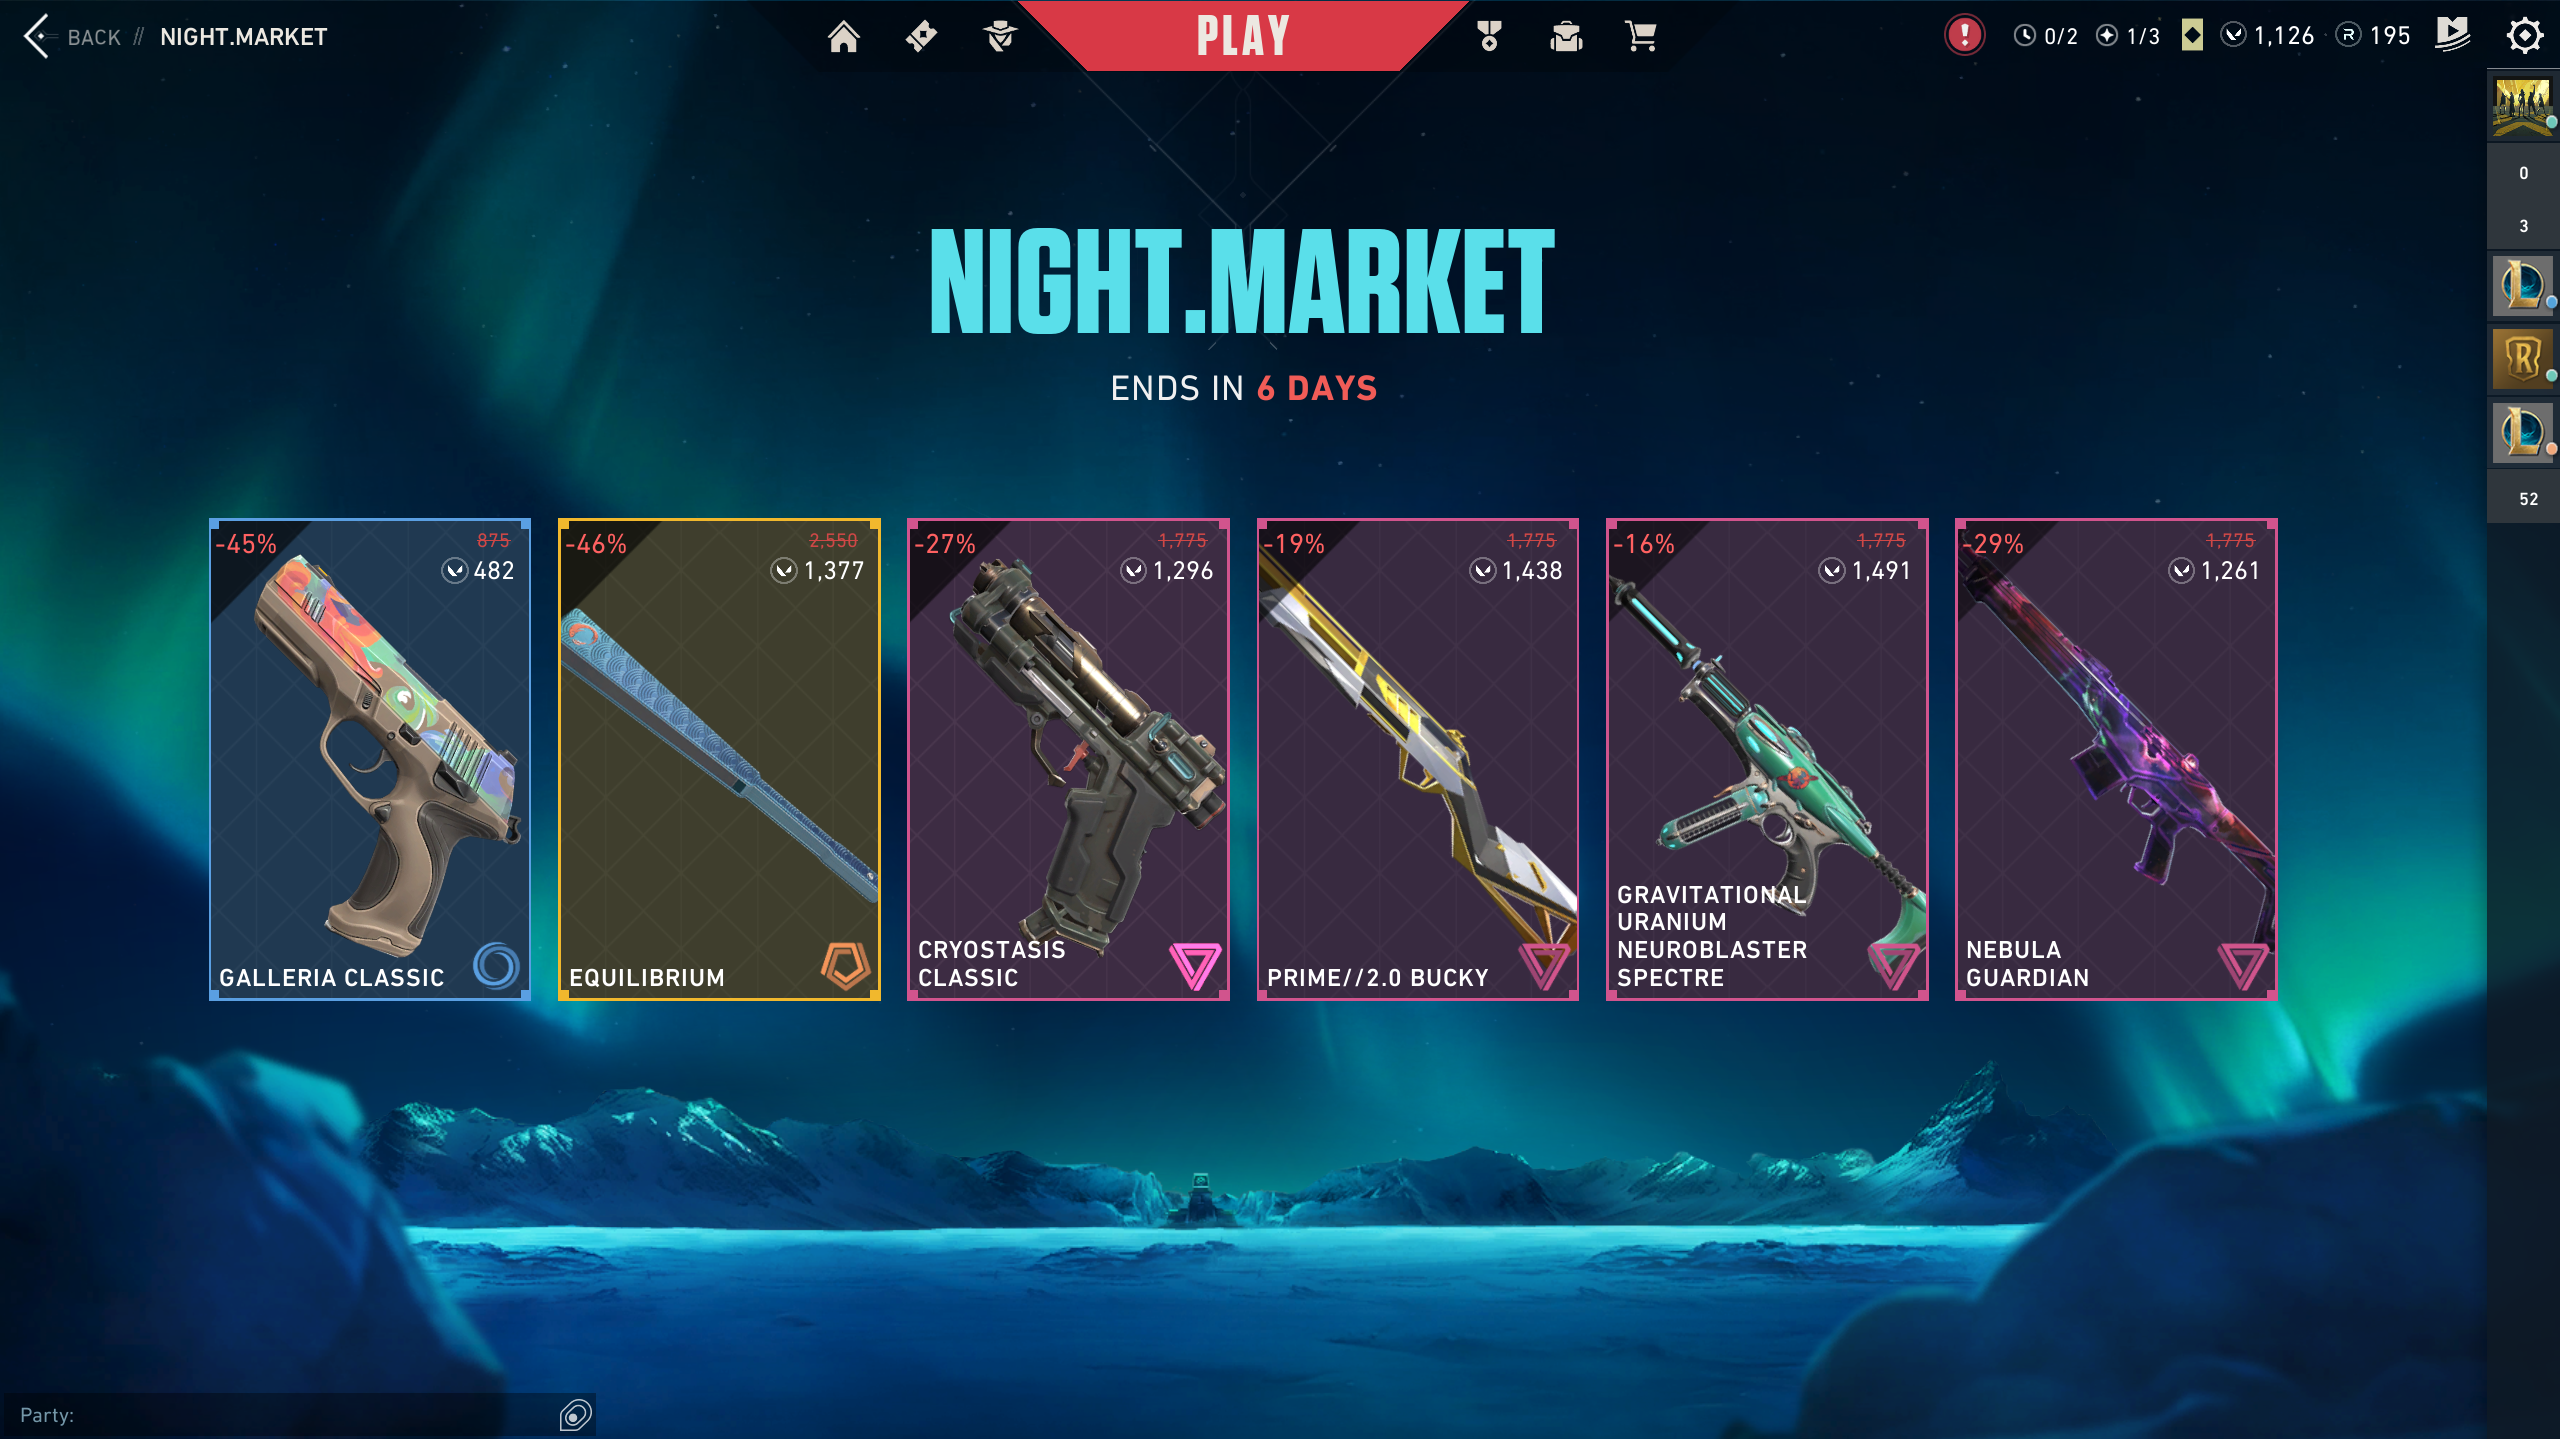 Một bộ sưu tập thị trường đêm đã mở, với năm giao diện khác nhau cho các vũ khí khác nhau được trưng bày